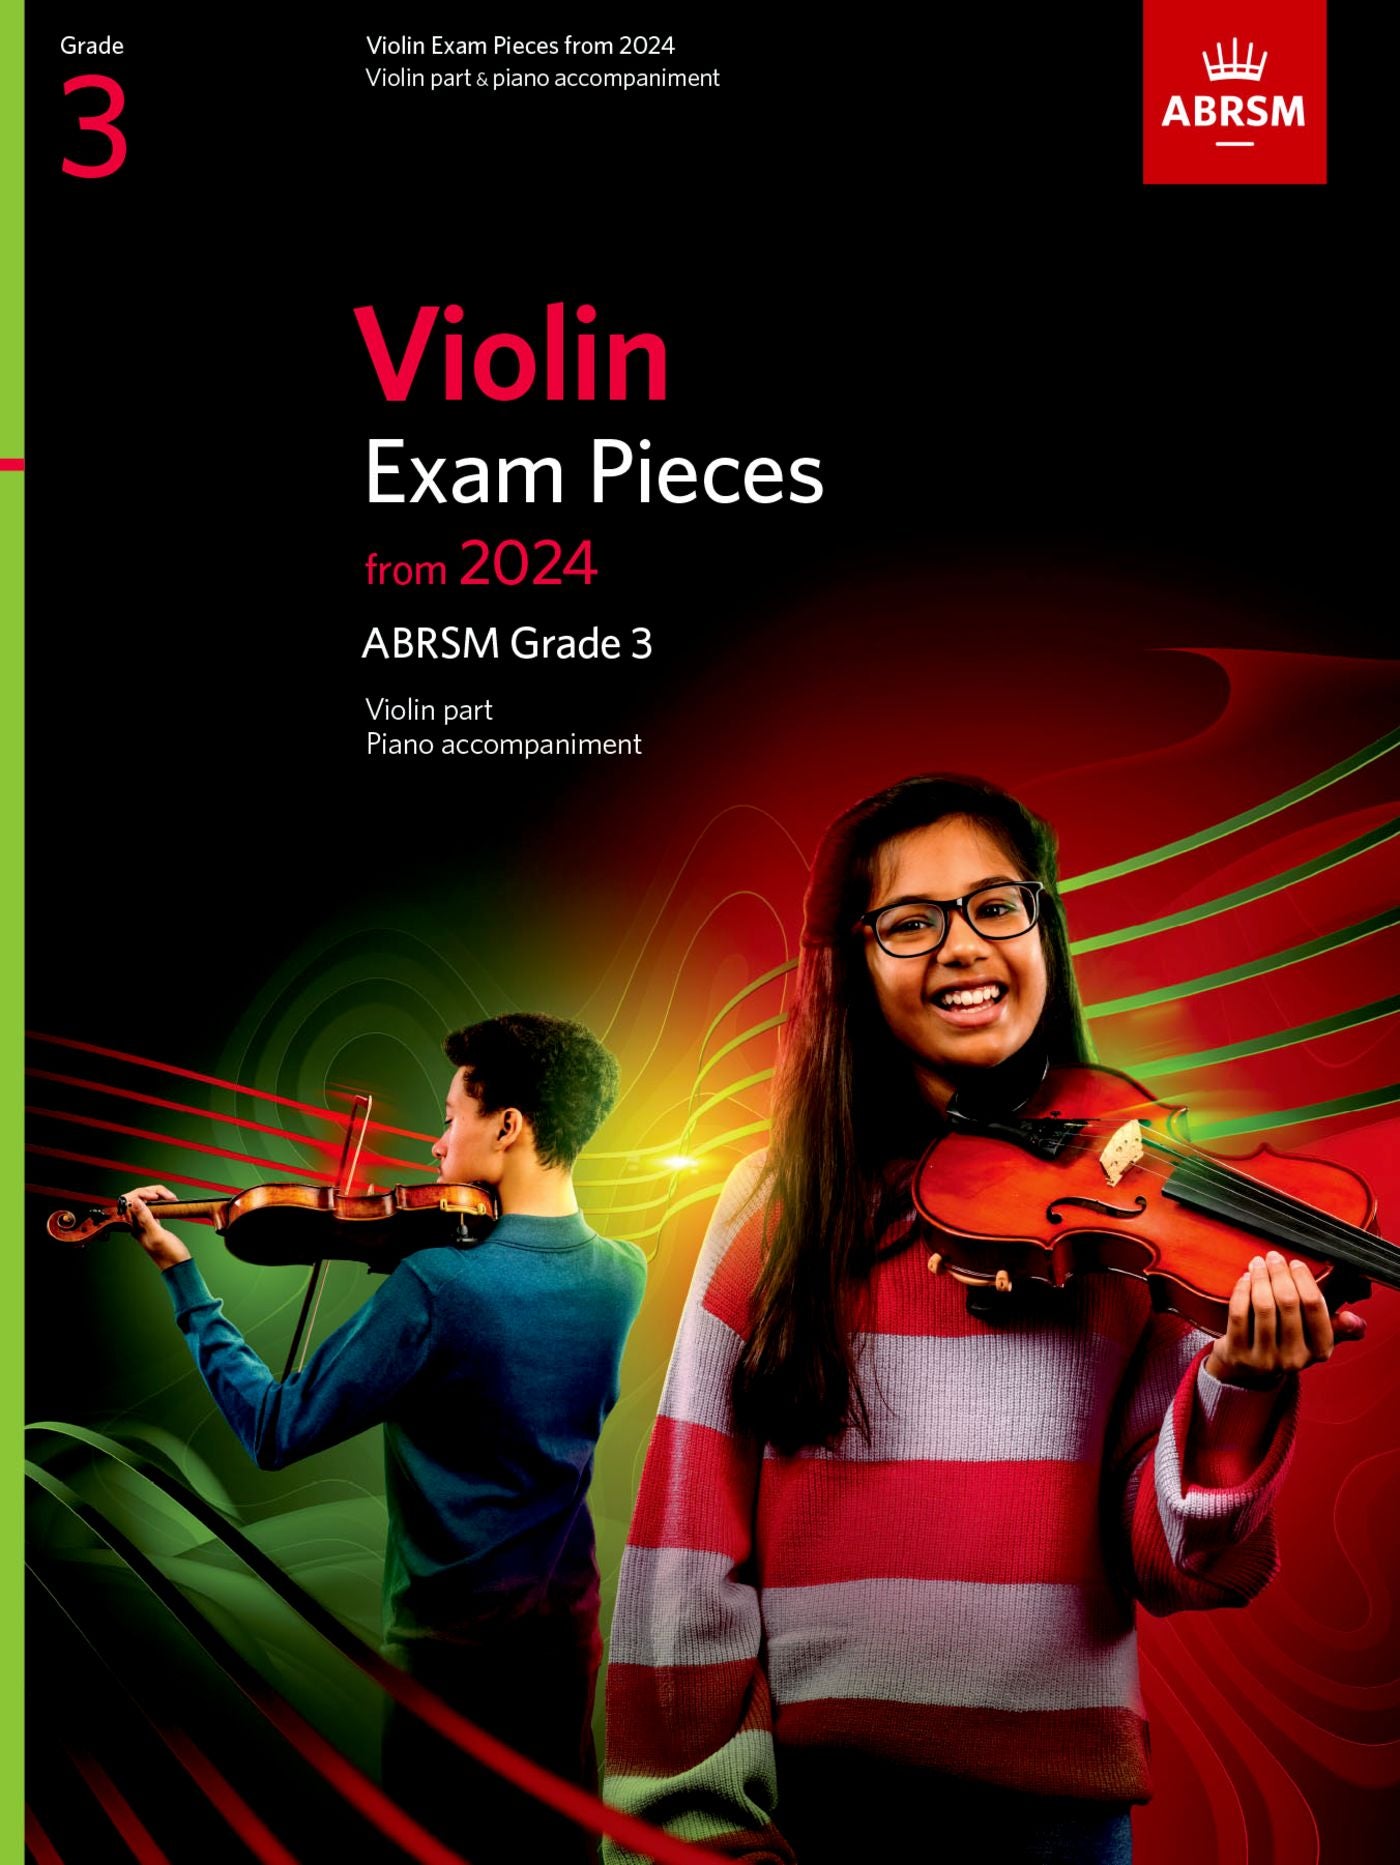 ABRSM Violin Exam Pieces 2024, Grade 3